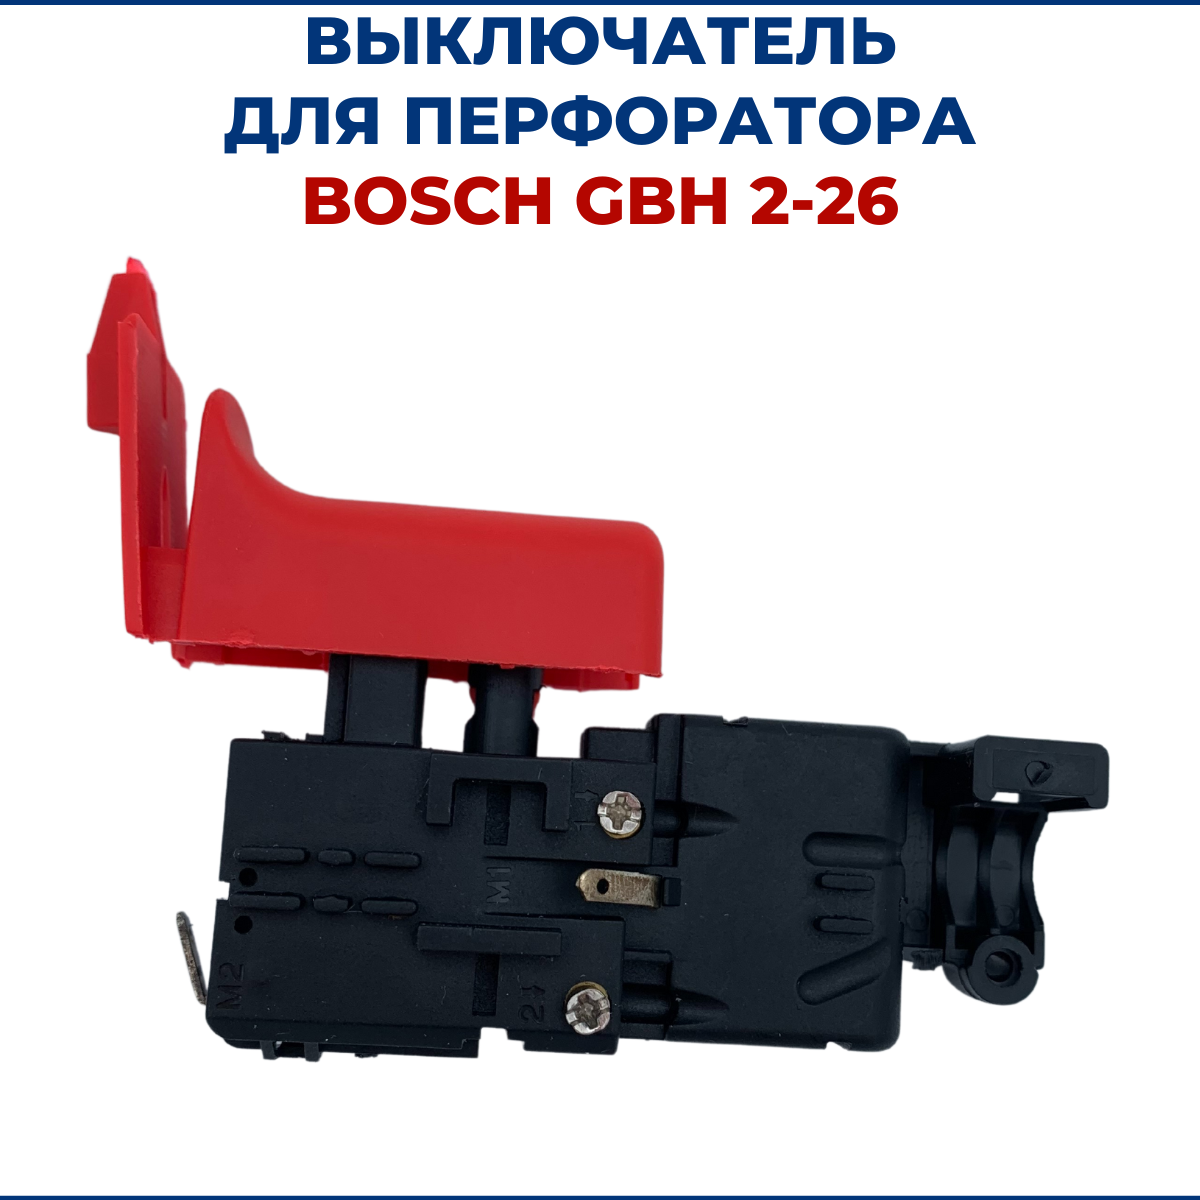 Выключатель для перфоратора GBH Bosch 2-26